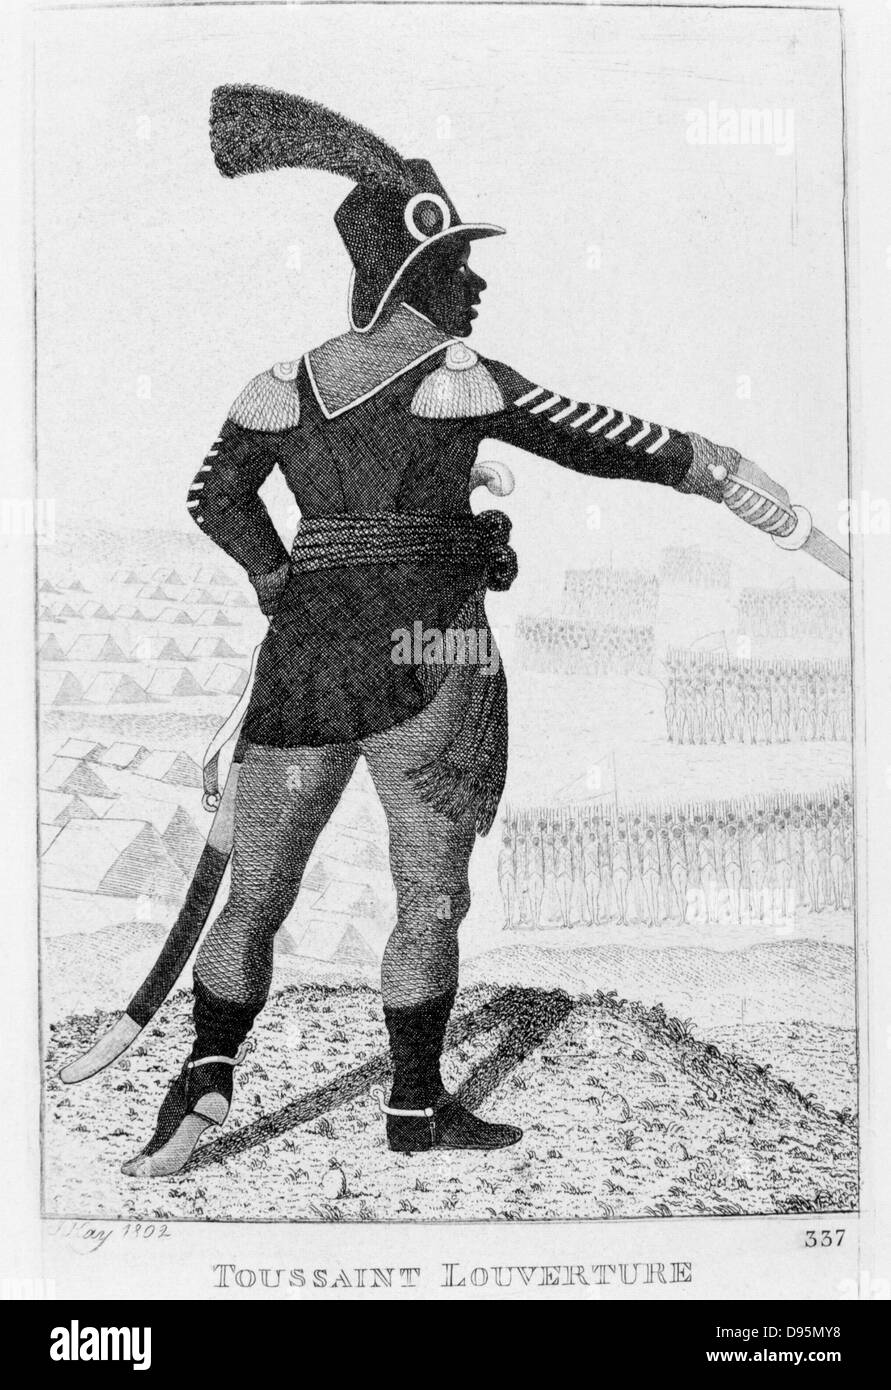 Pierre Dominique Toussaint l ' Ouverture (1746-1803) haitianische Revolutionsführer. Radierung von John Kay 1802. Stockfoto